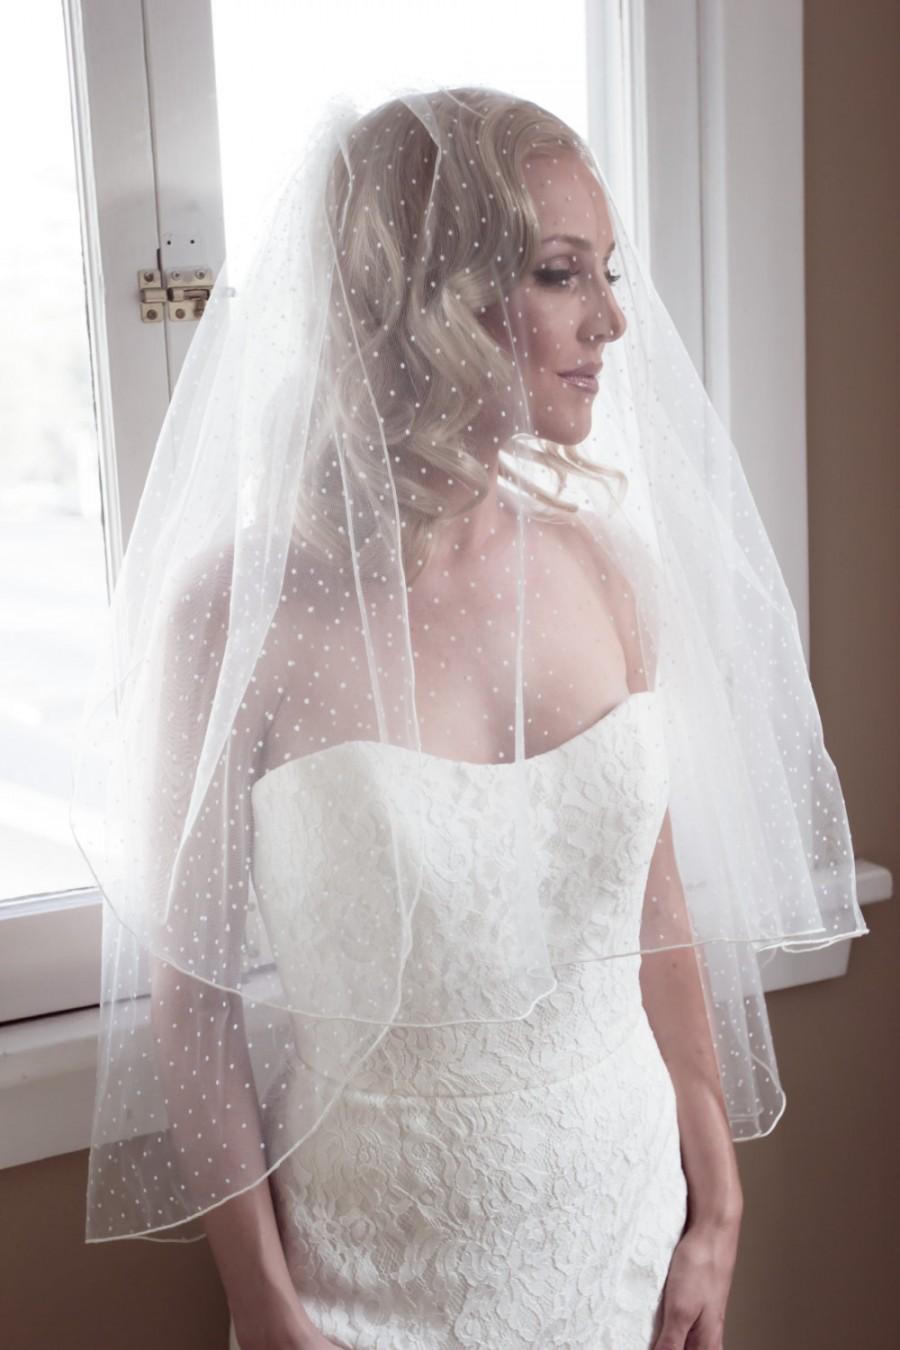 زفاف - Polka Dot Veil, Swiss Dot Veil, Dotted Veil, Pencil Edge Veil, Bridal Veil, Fingertip Veil, Cathedral Veil, Long Veil, 50s Bride Style 1202